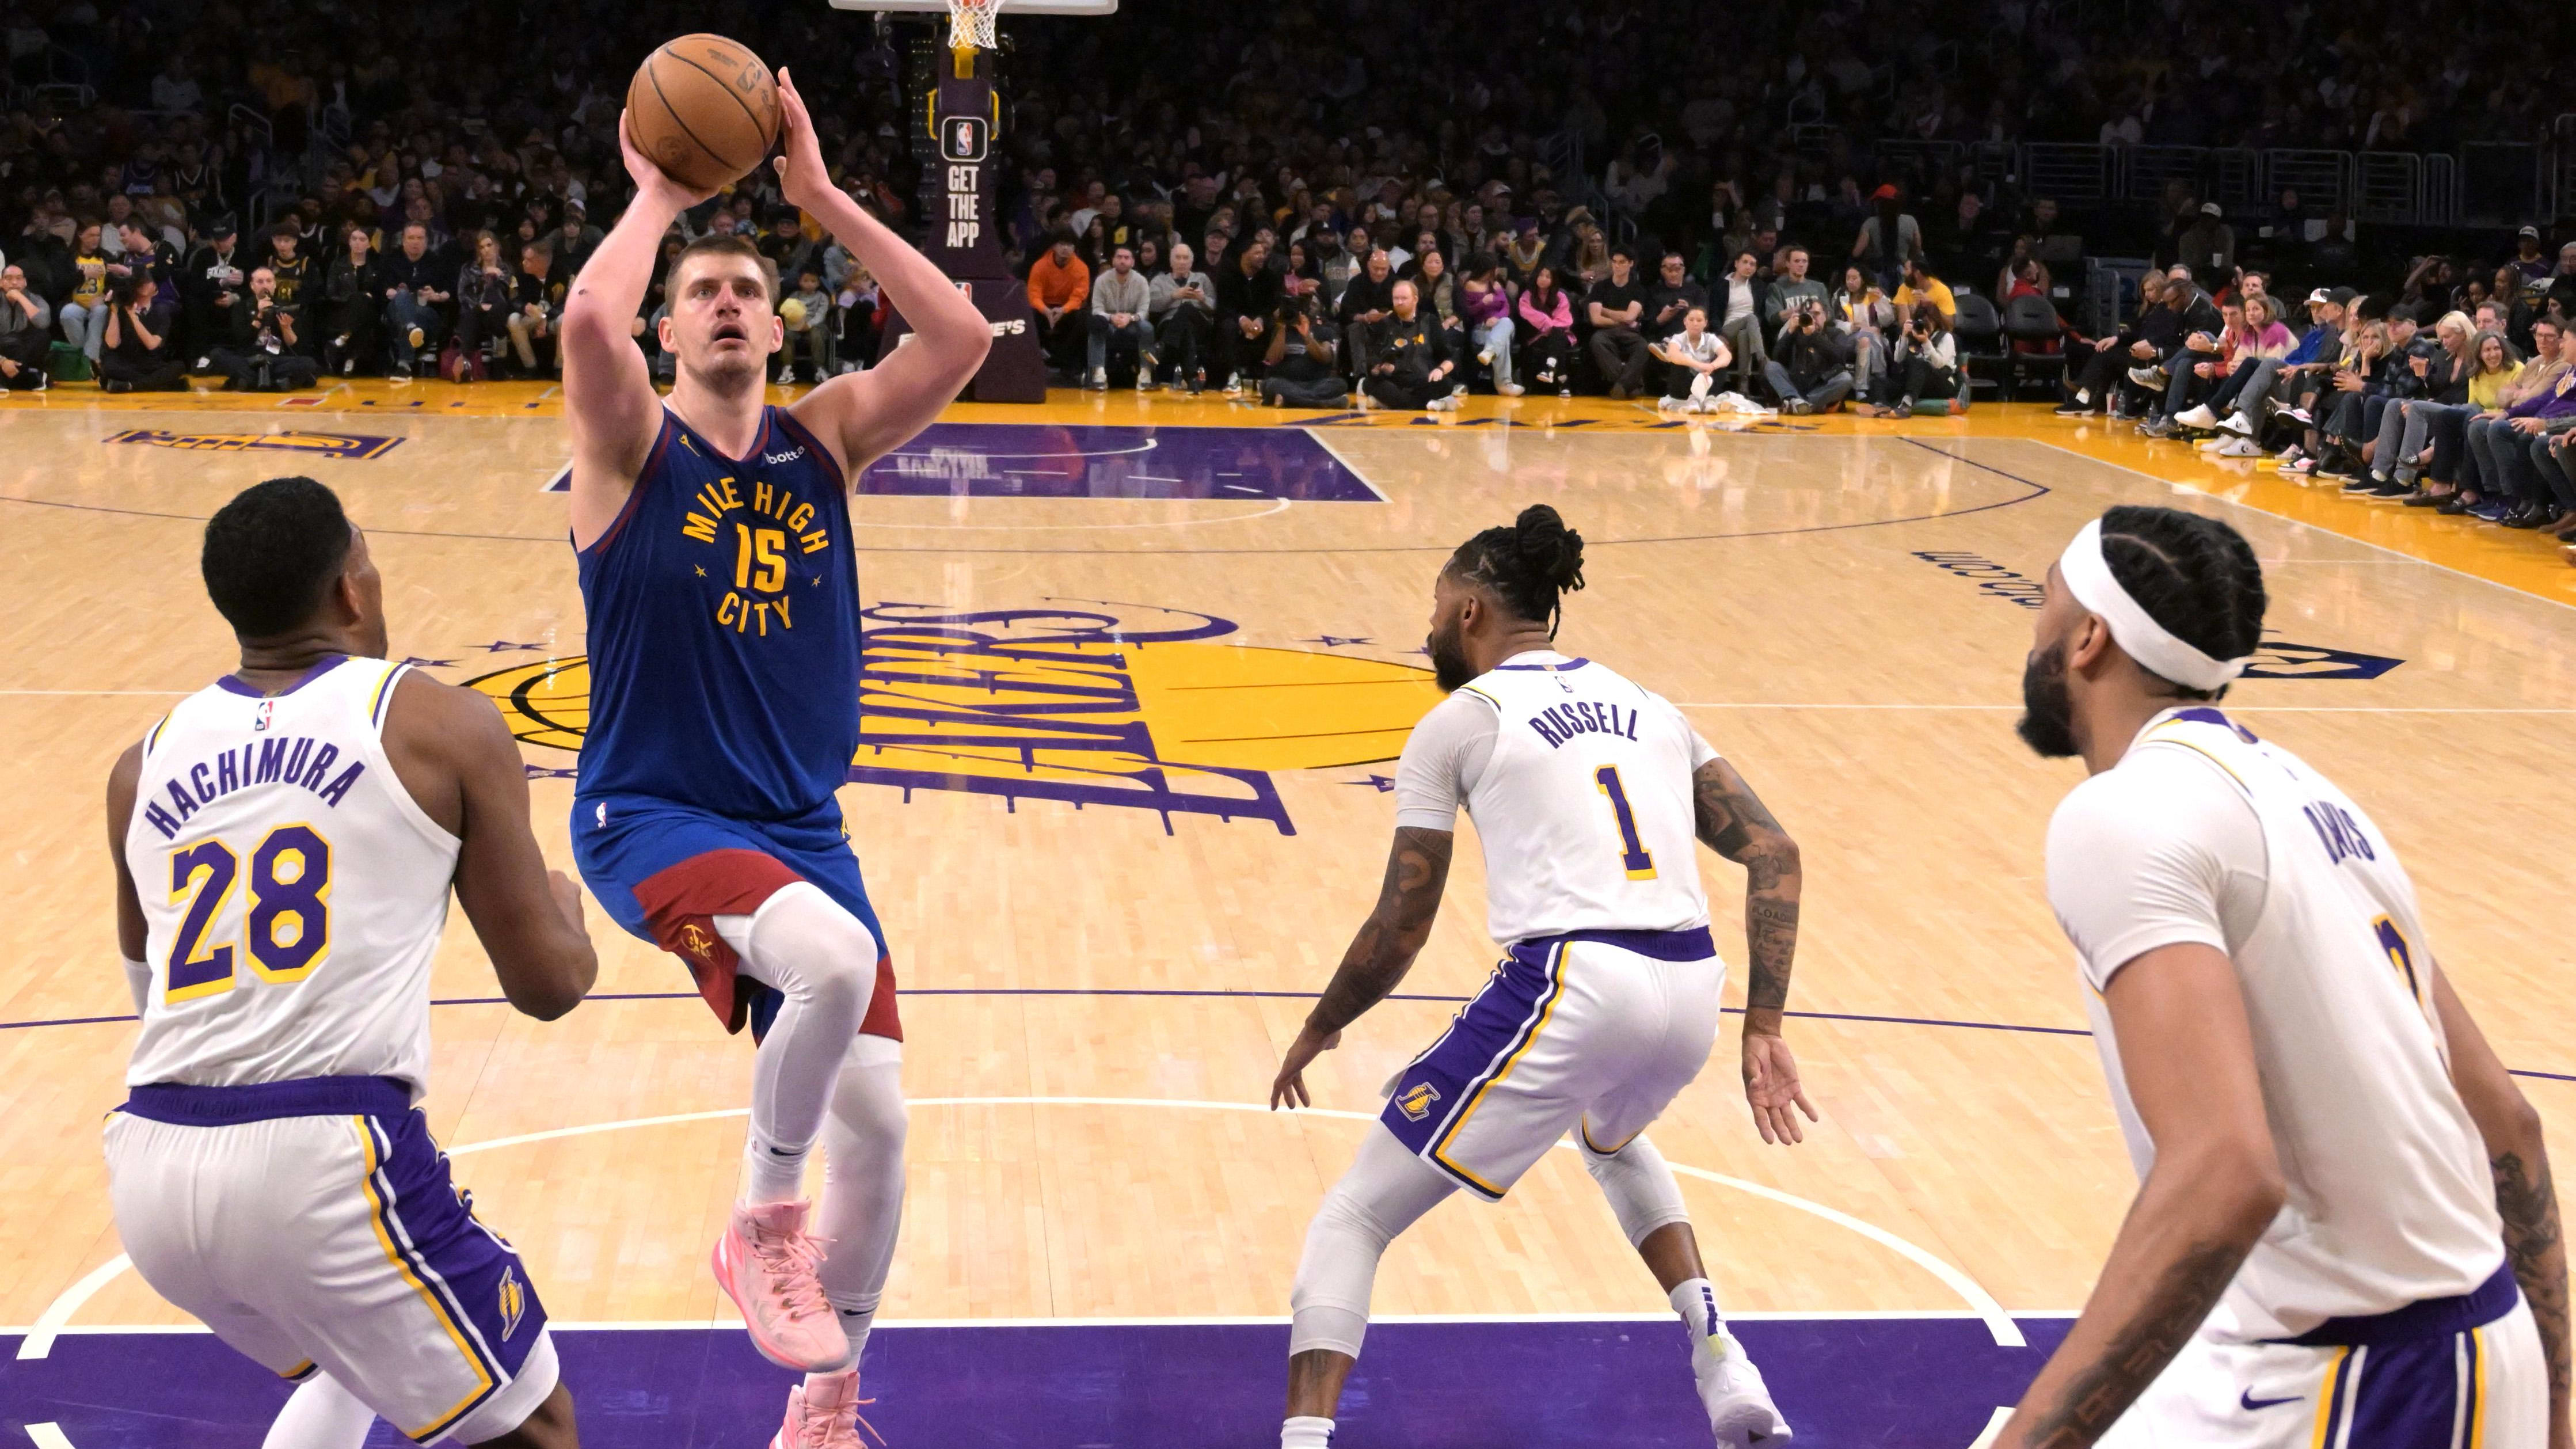 Lakers PG freut sich auf die Herausforderung, dieses Jahr Nuggets zu besiegen